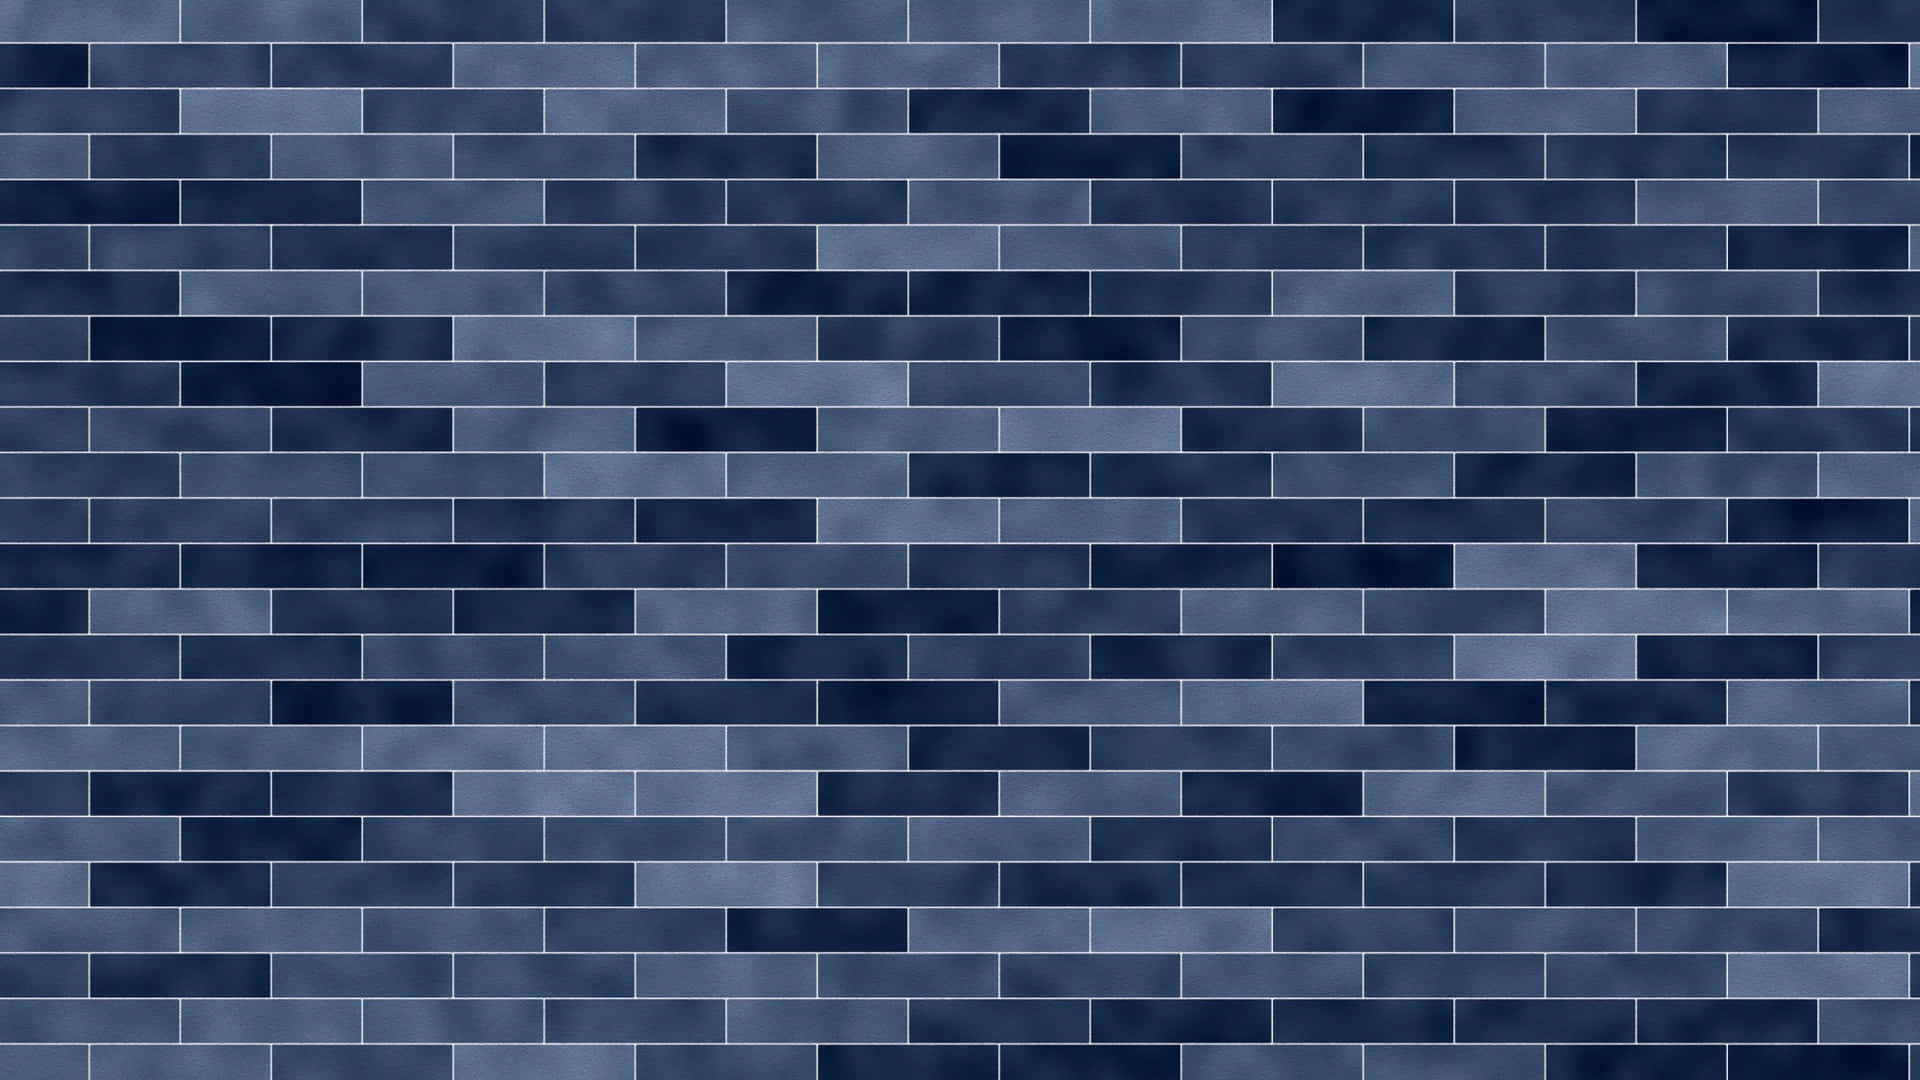 Imagensde Textura De Tijolo Azul Cinza.